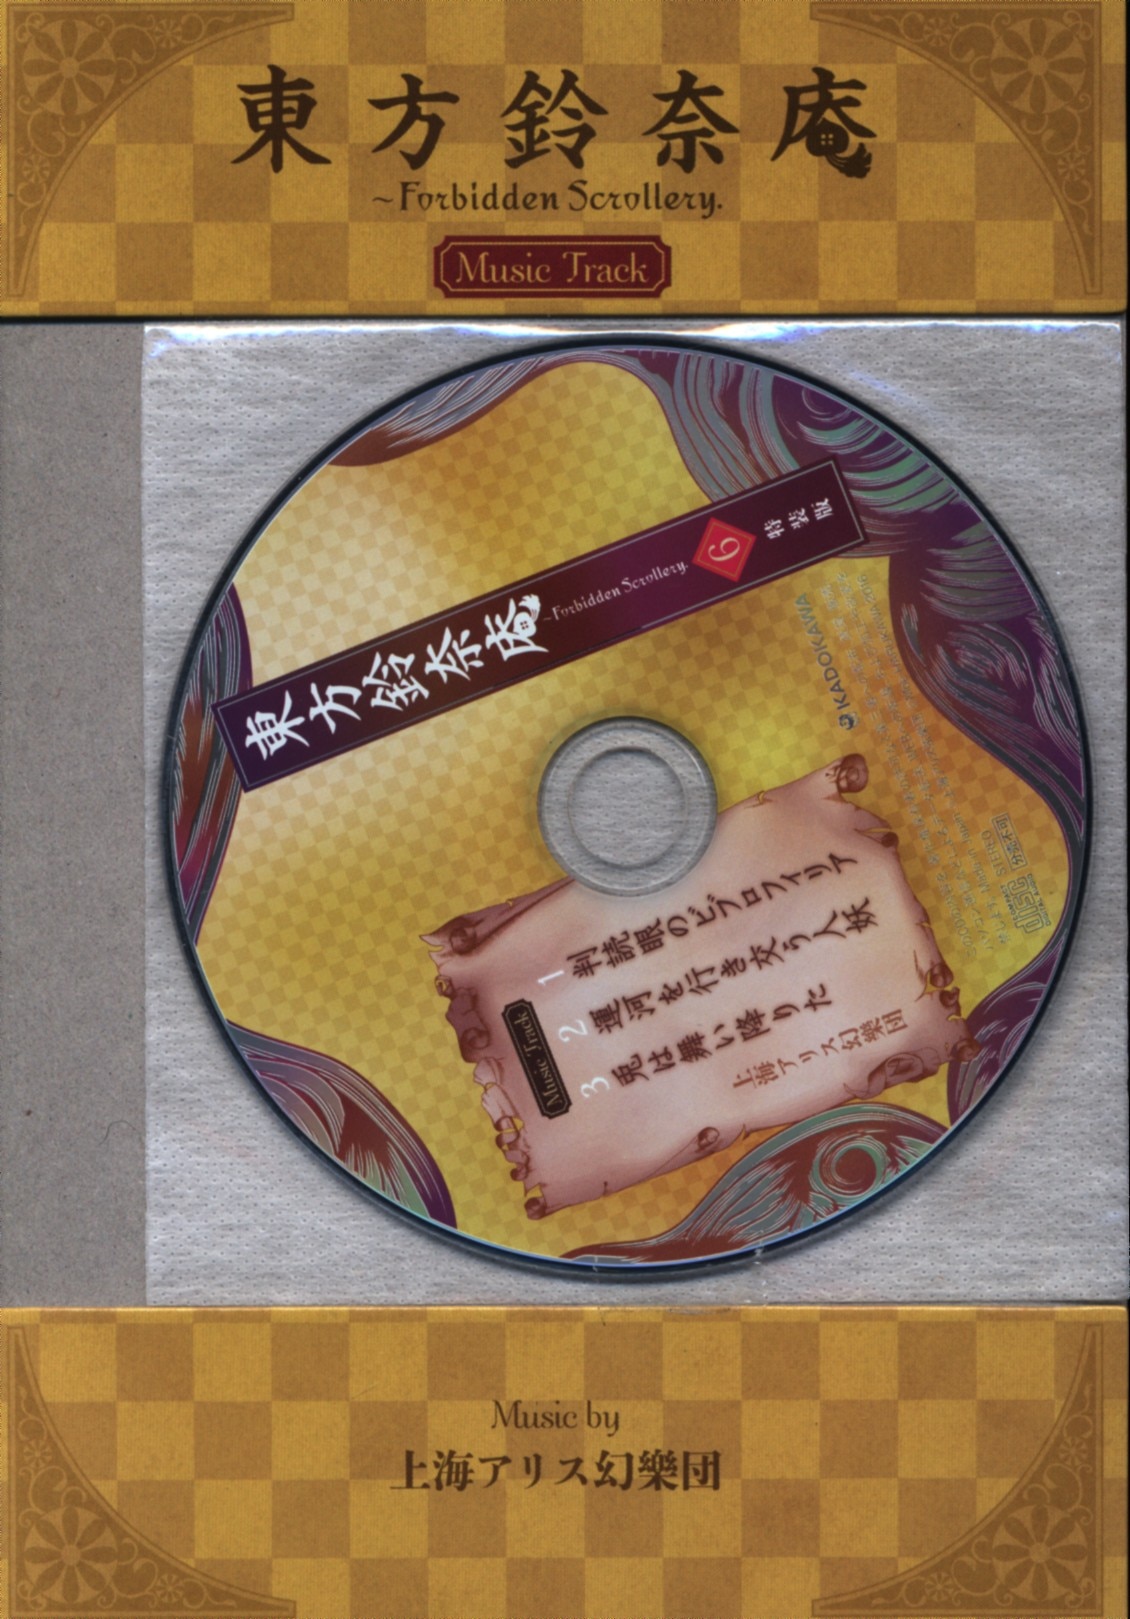 Kadokawa Harukawamoe Touhou Suzu奈庵 Forbidden Scrollery Limited Edition 6 Mandarake Online Shop